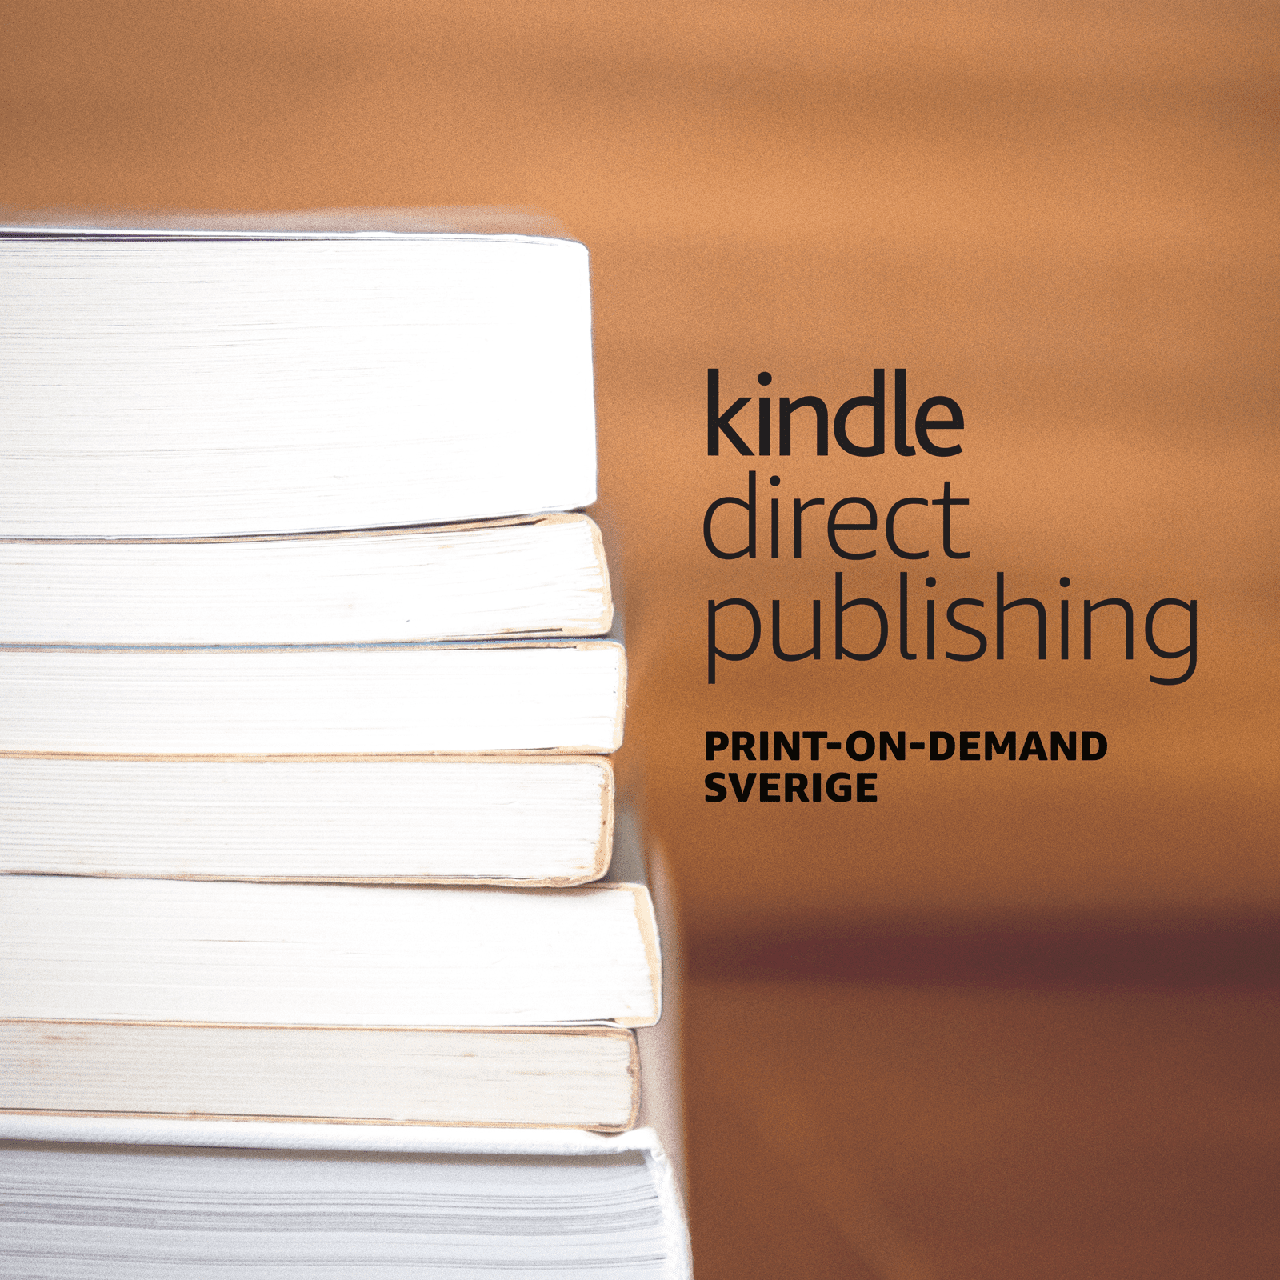 Amazon.se lanserar print-on-demand-tjänst för böcker